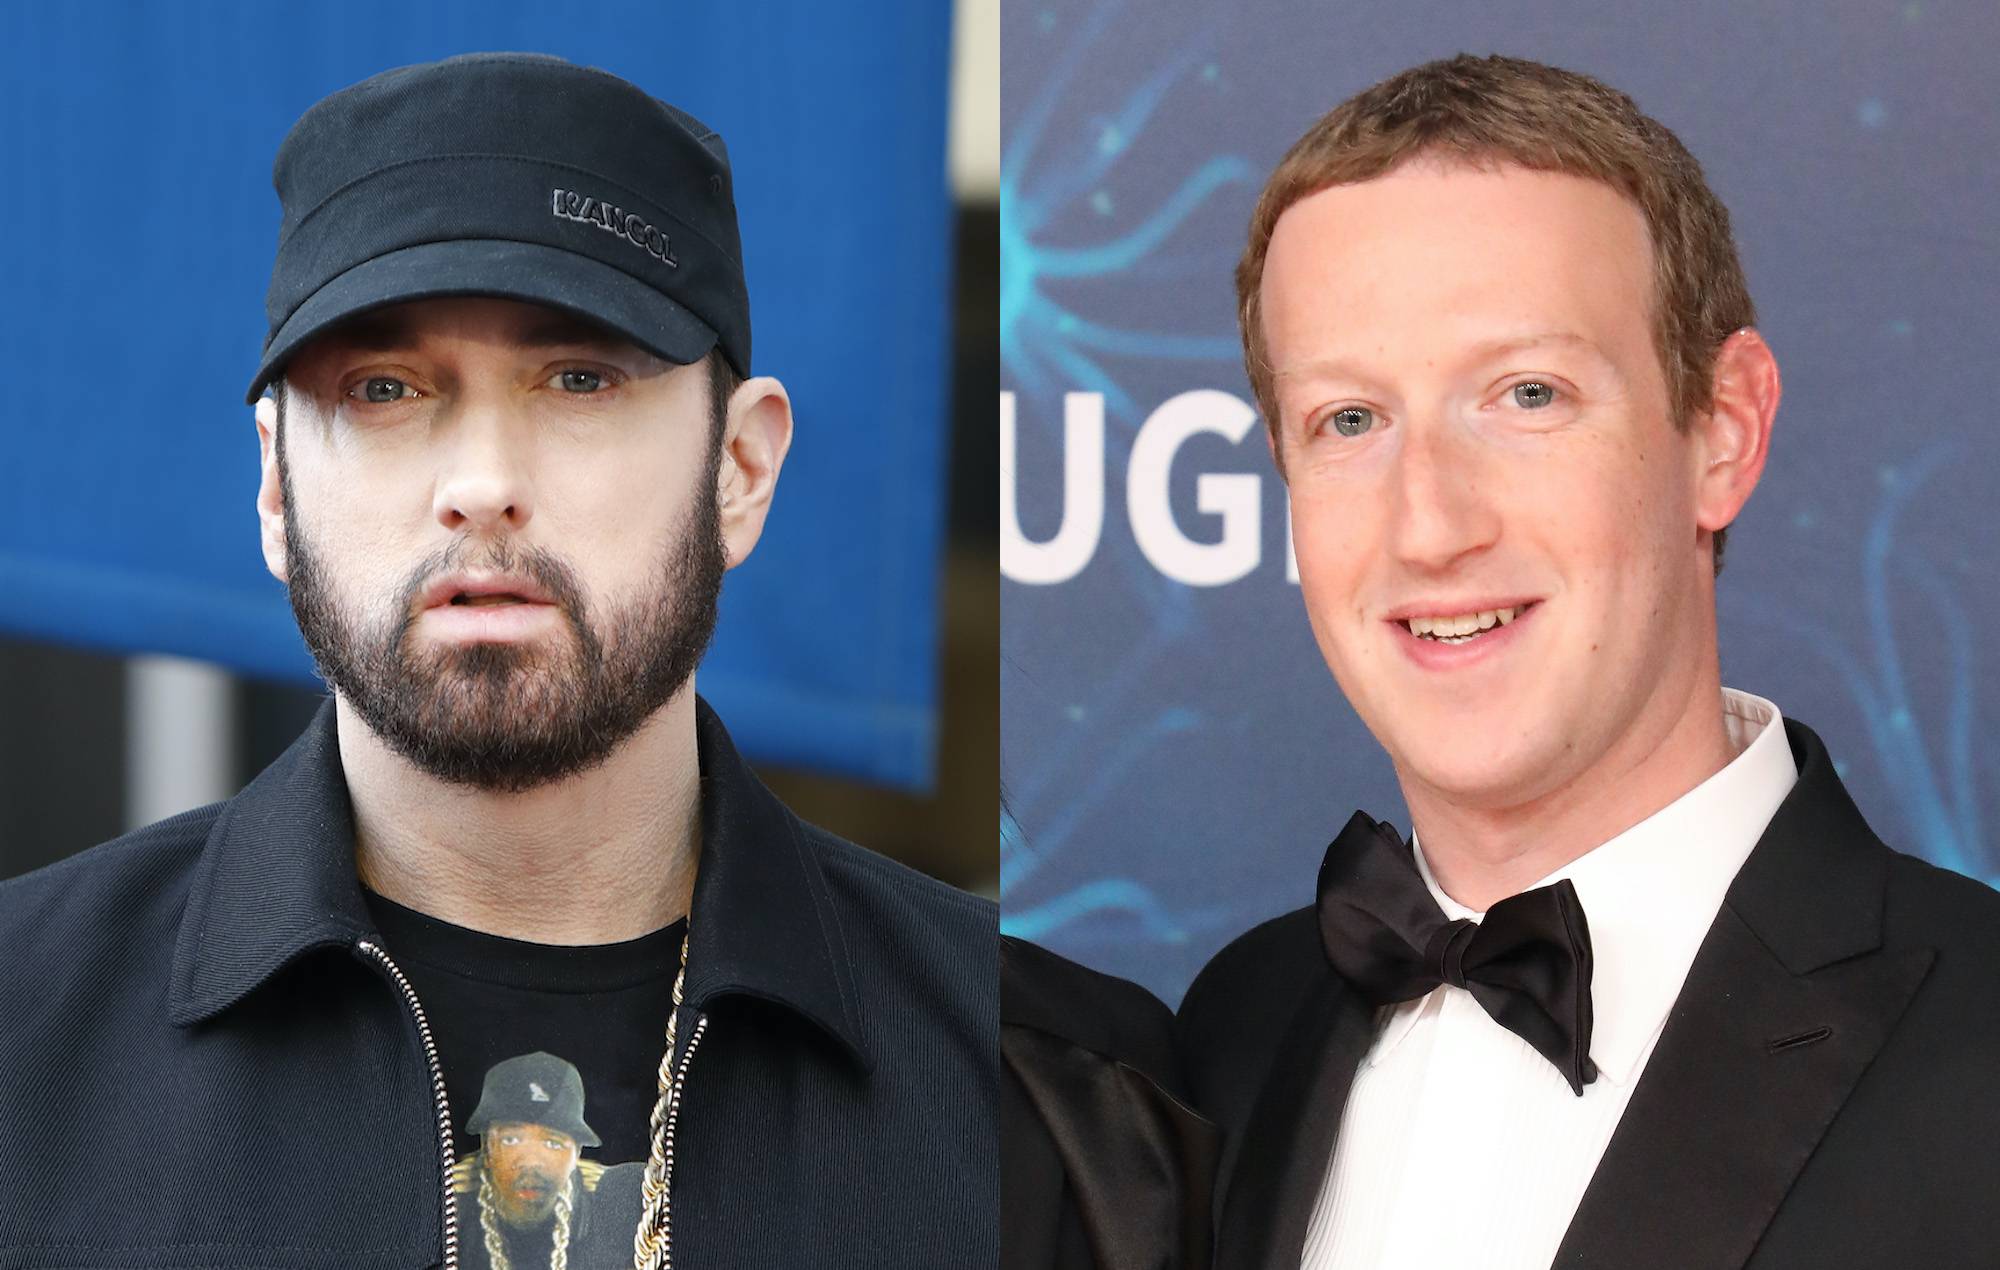 Mira una canción de Eminem escrita por un robot de la IA, disimulando a Mark Zuckerberg